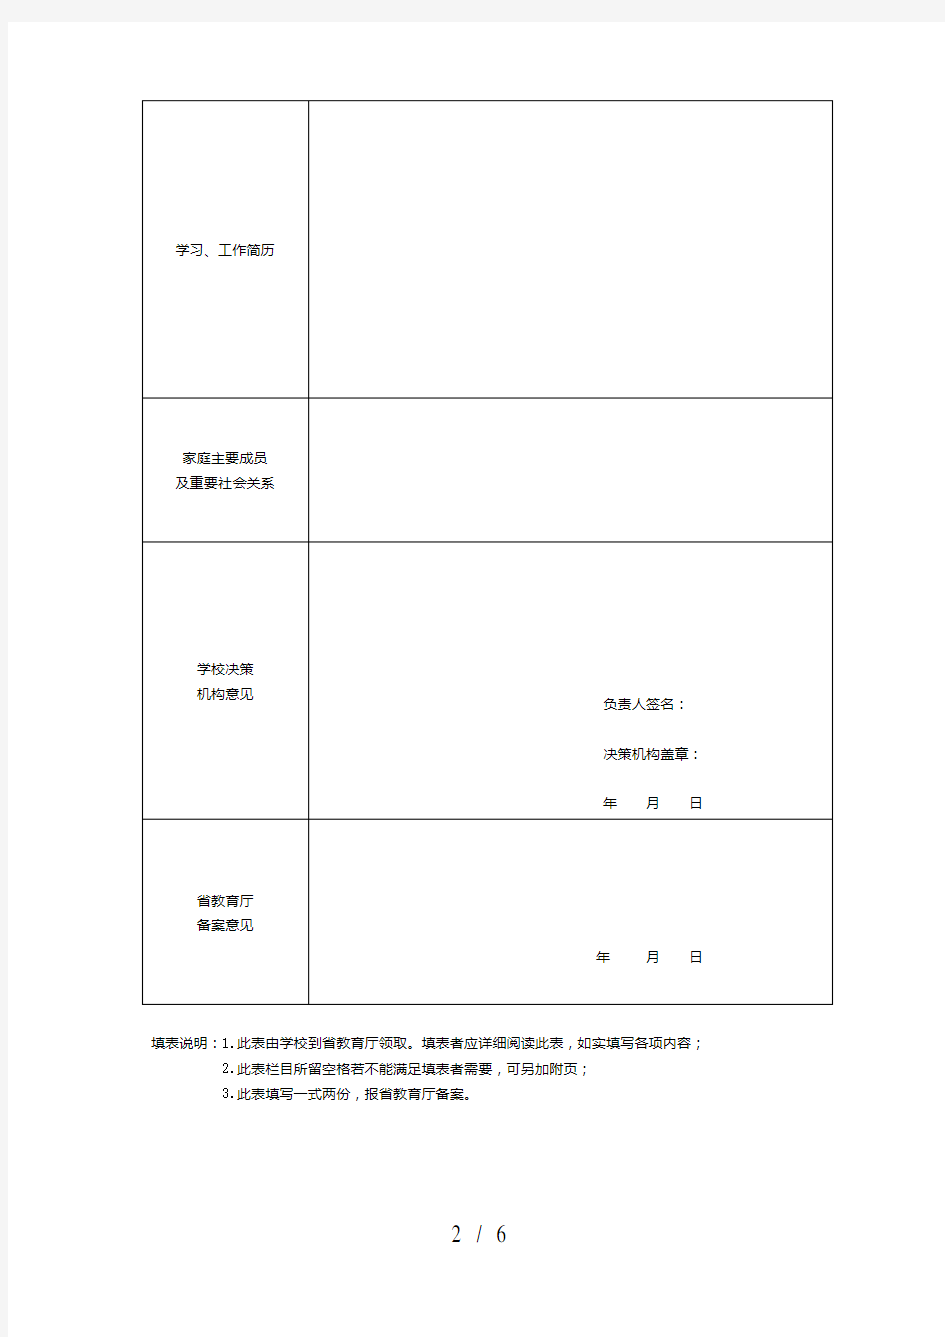 江西省民办高等学校决策机构组成人员备案表(式样)